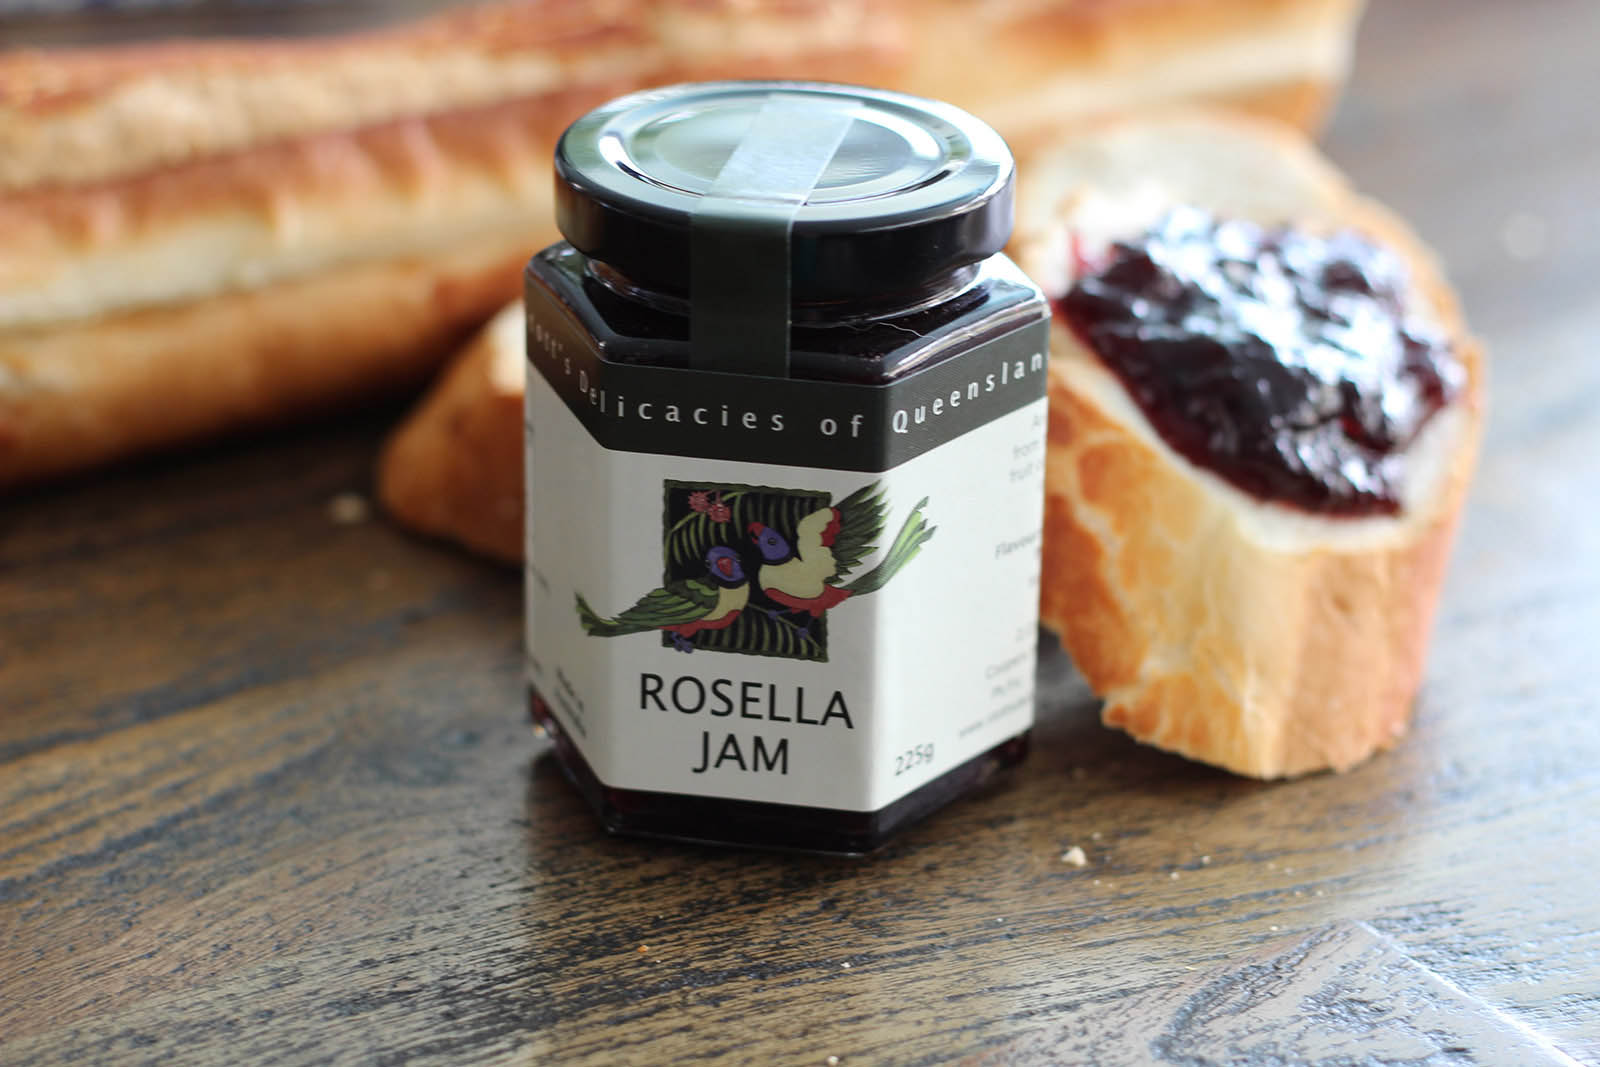 Rosella Jam available at Brisbane Airport | Gourmet Treasures at Brisbane Airport